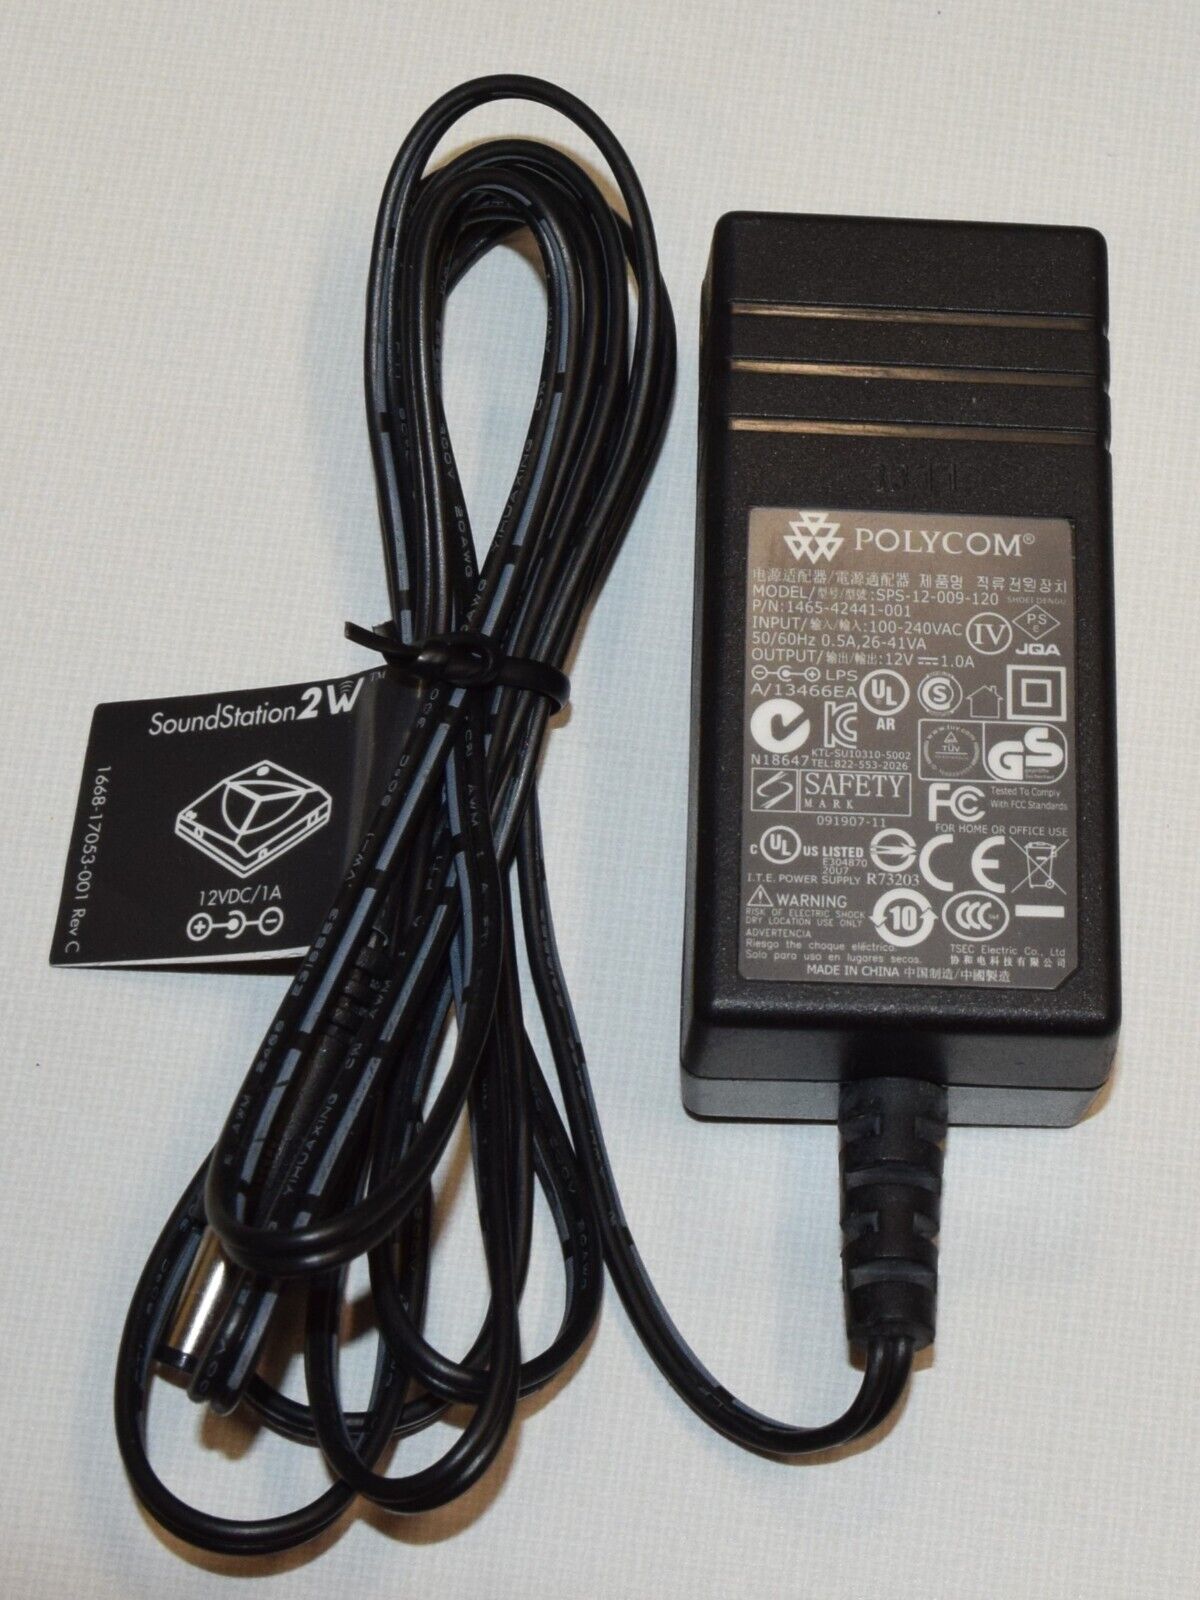 12V 1A Power Supply SPS-12-009-120 1465-42441-001 for Polycom Soundstation2W